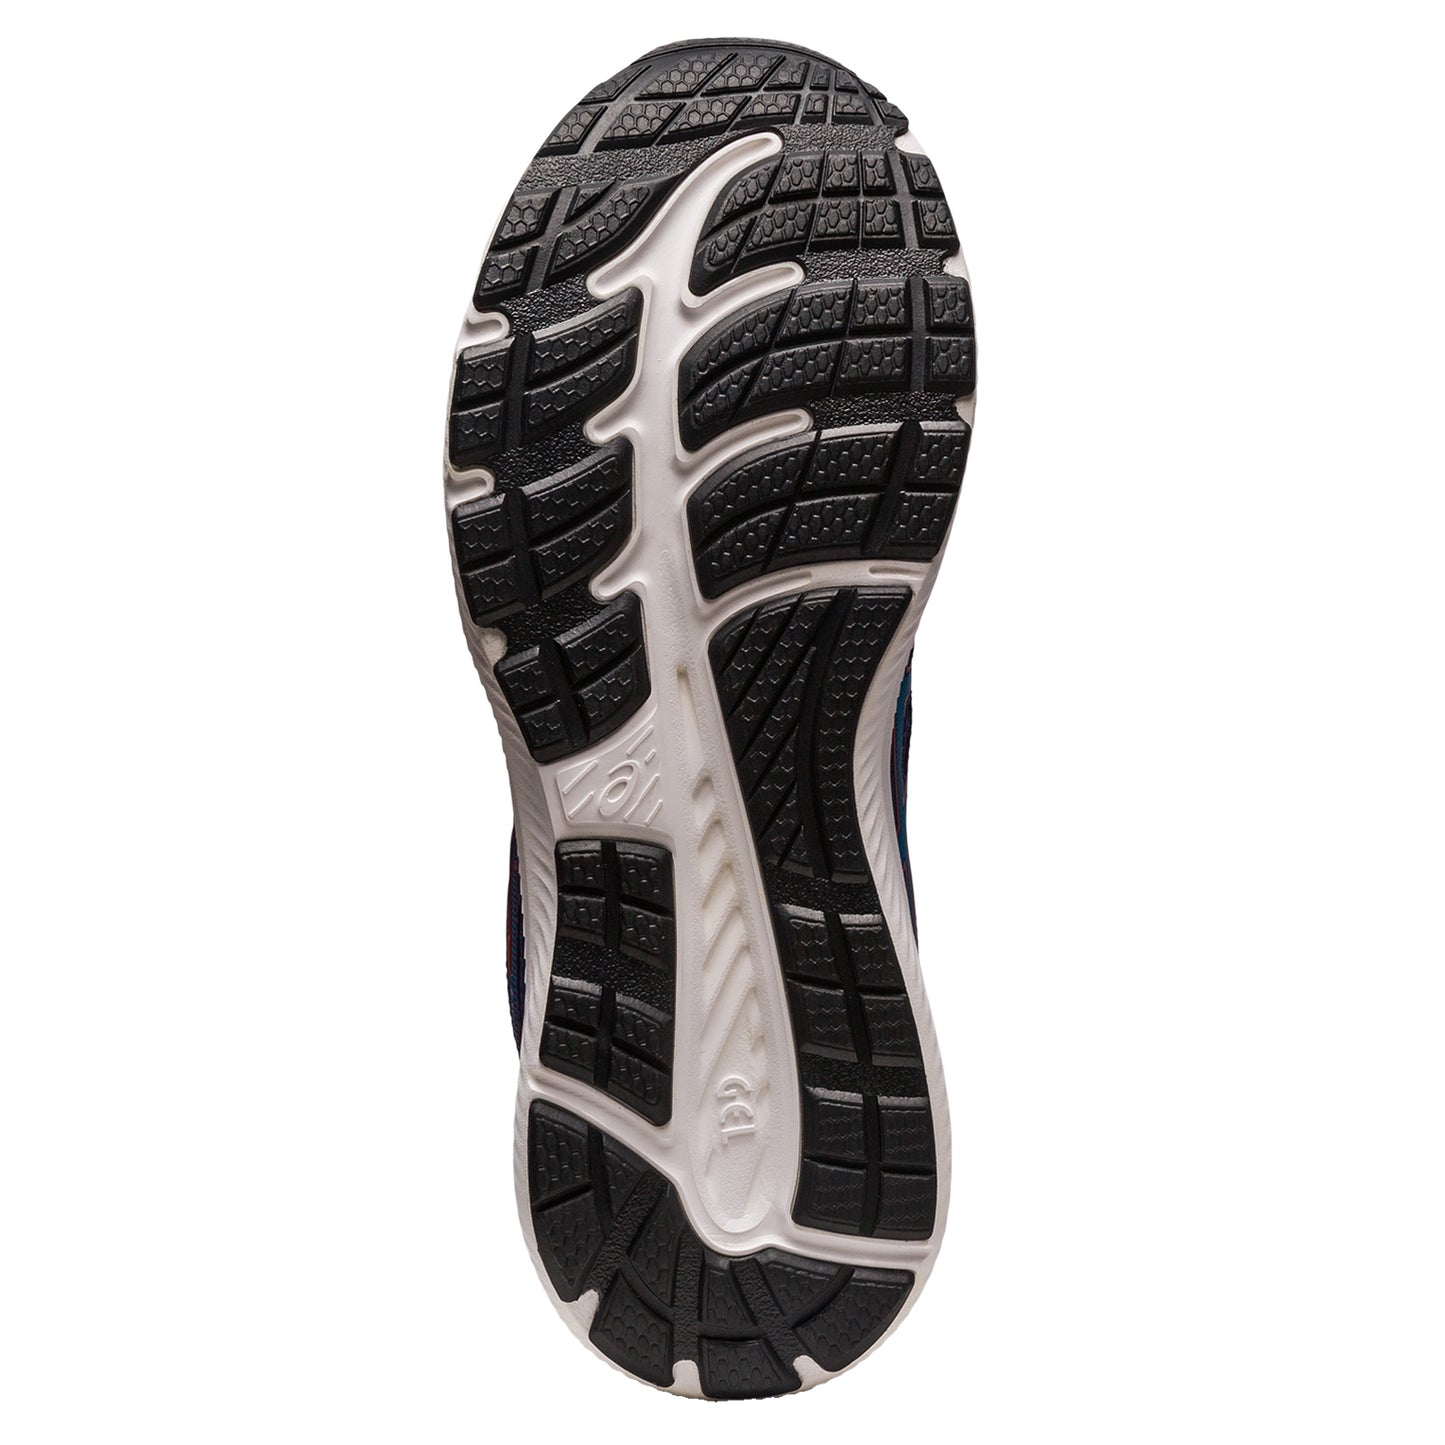 Peltz Shoes  Men's ASICS GEL-Contend 8 Running Shoe - Extra Wide Width INDIGO BLUE/ISLAND BLUE 1011B493-403